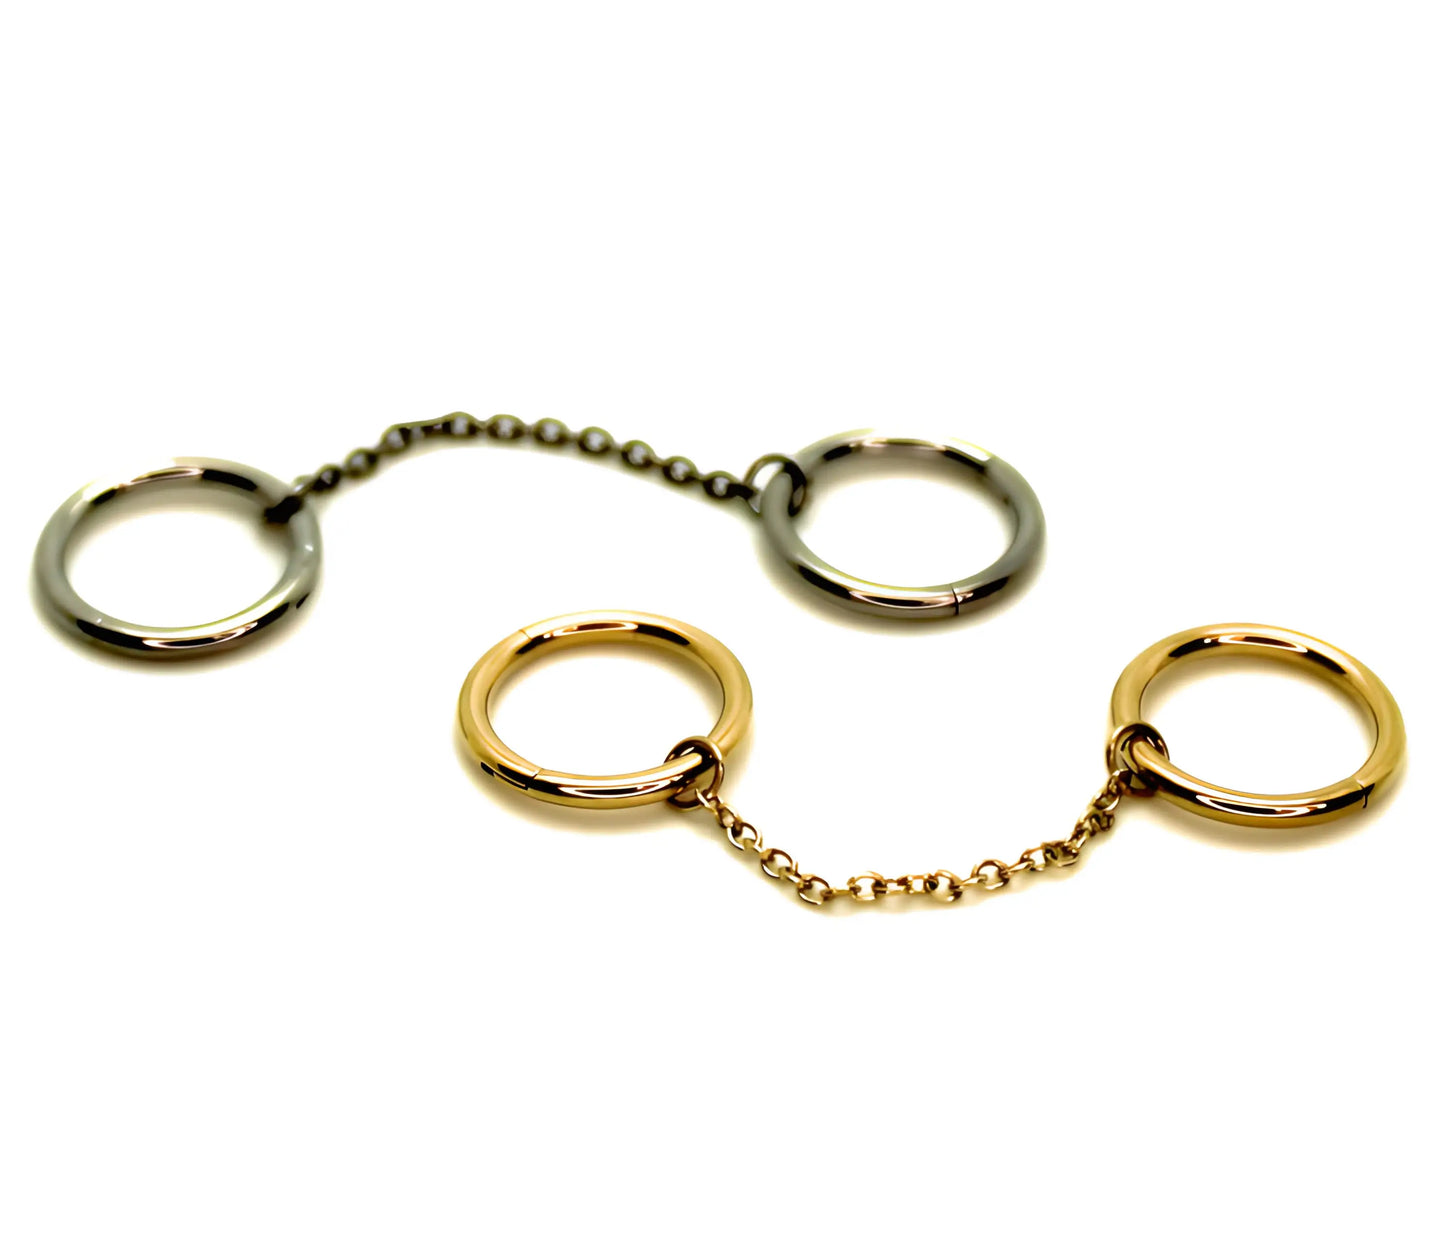 Présentation de 2 bijoux de piercing en titane. L'un en finition PVD or, l'autre de couleur argenté, constitués de 2 anneaux chacun reliés entre eux apr une chainette de 2 cm